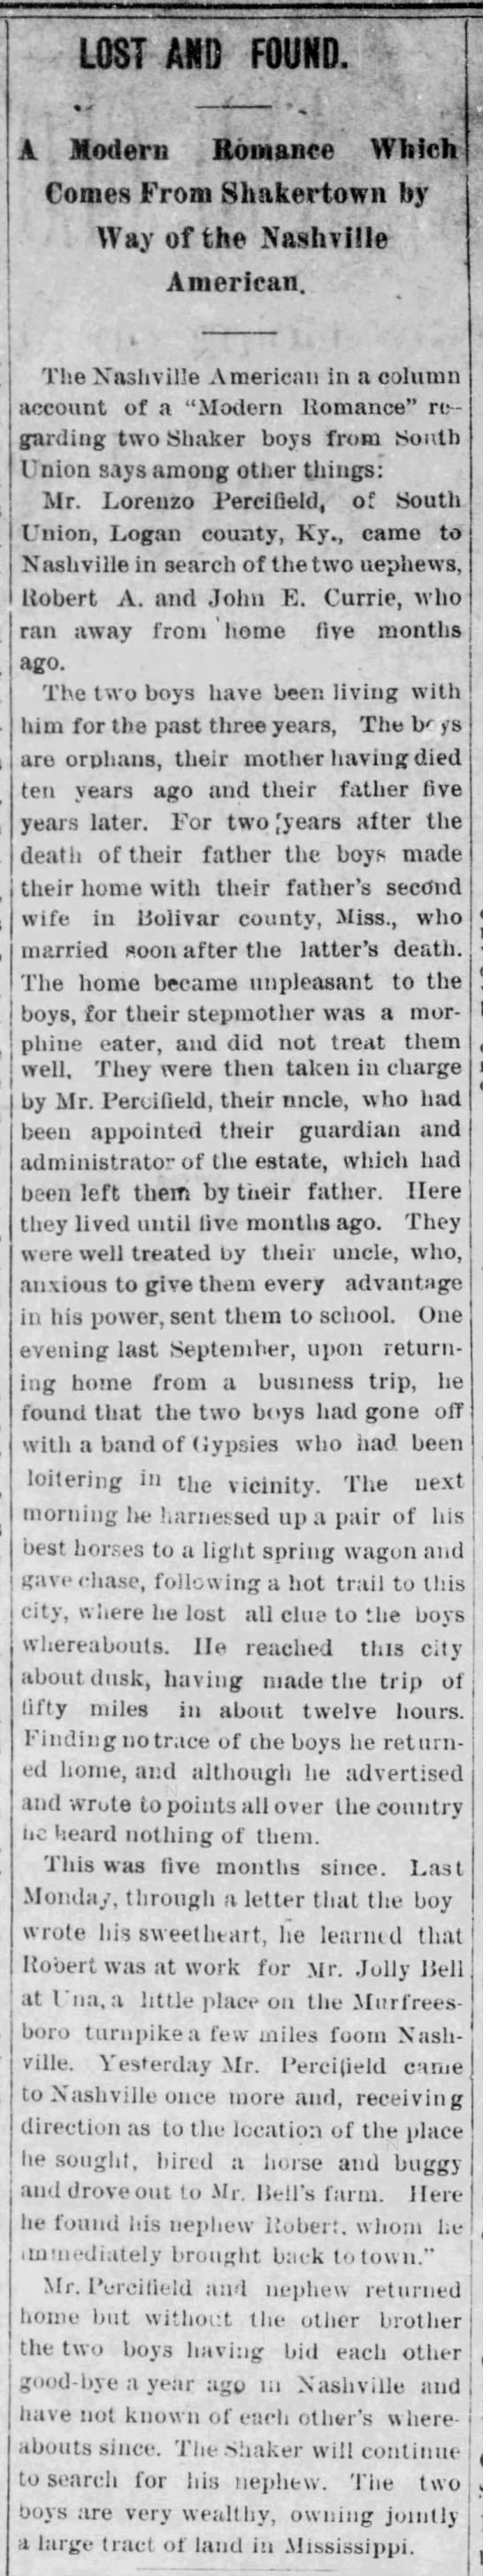 The Herald-Ledger
RUSSELLVILLE, KENTUCKY March 2, 1892 - 